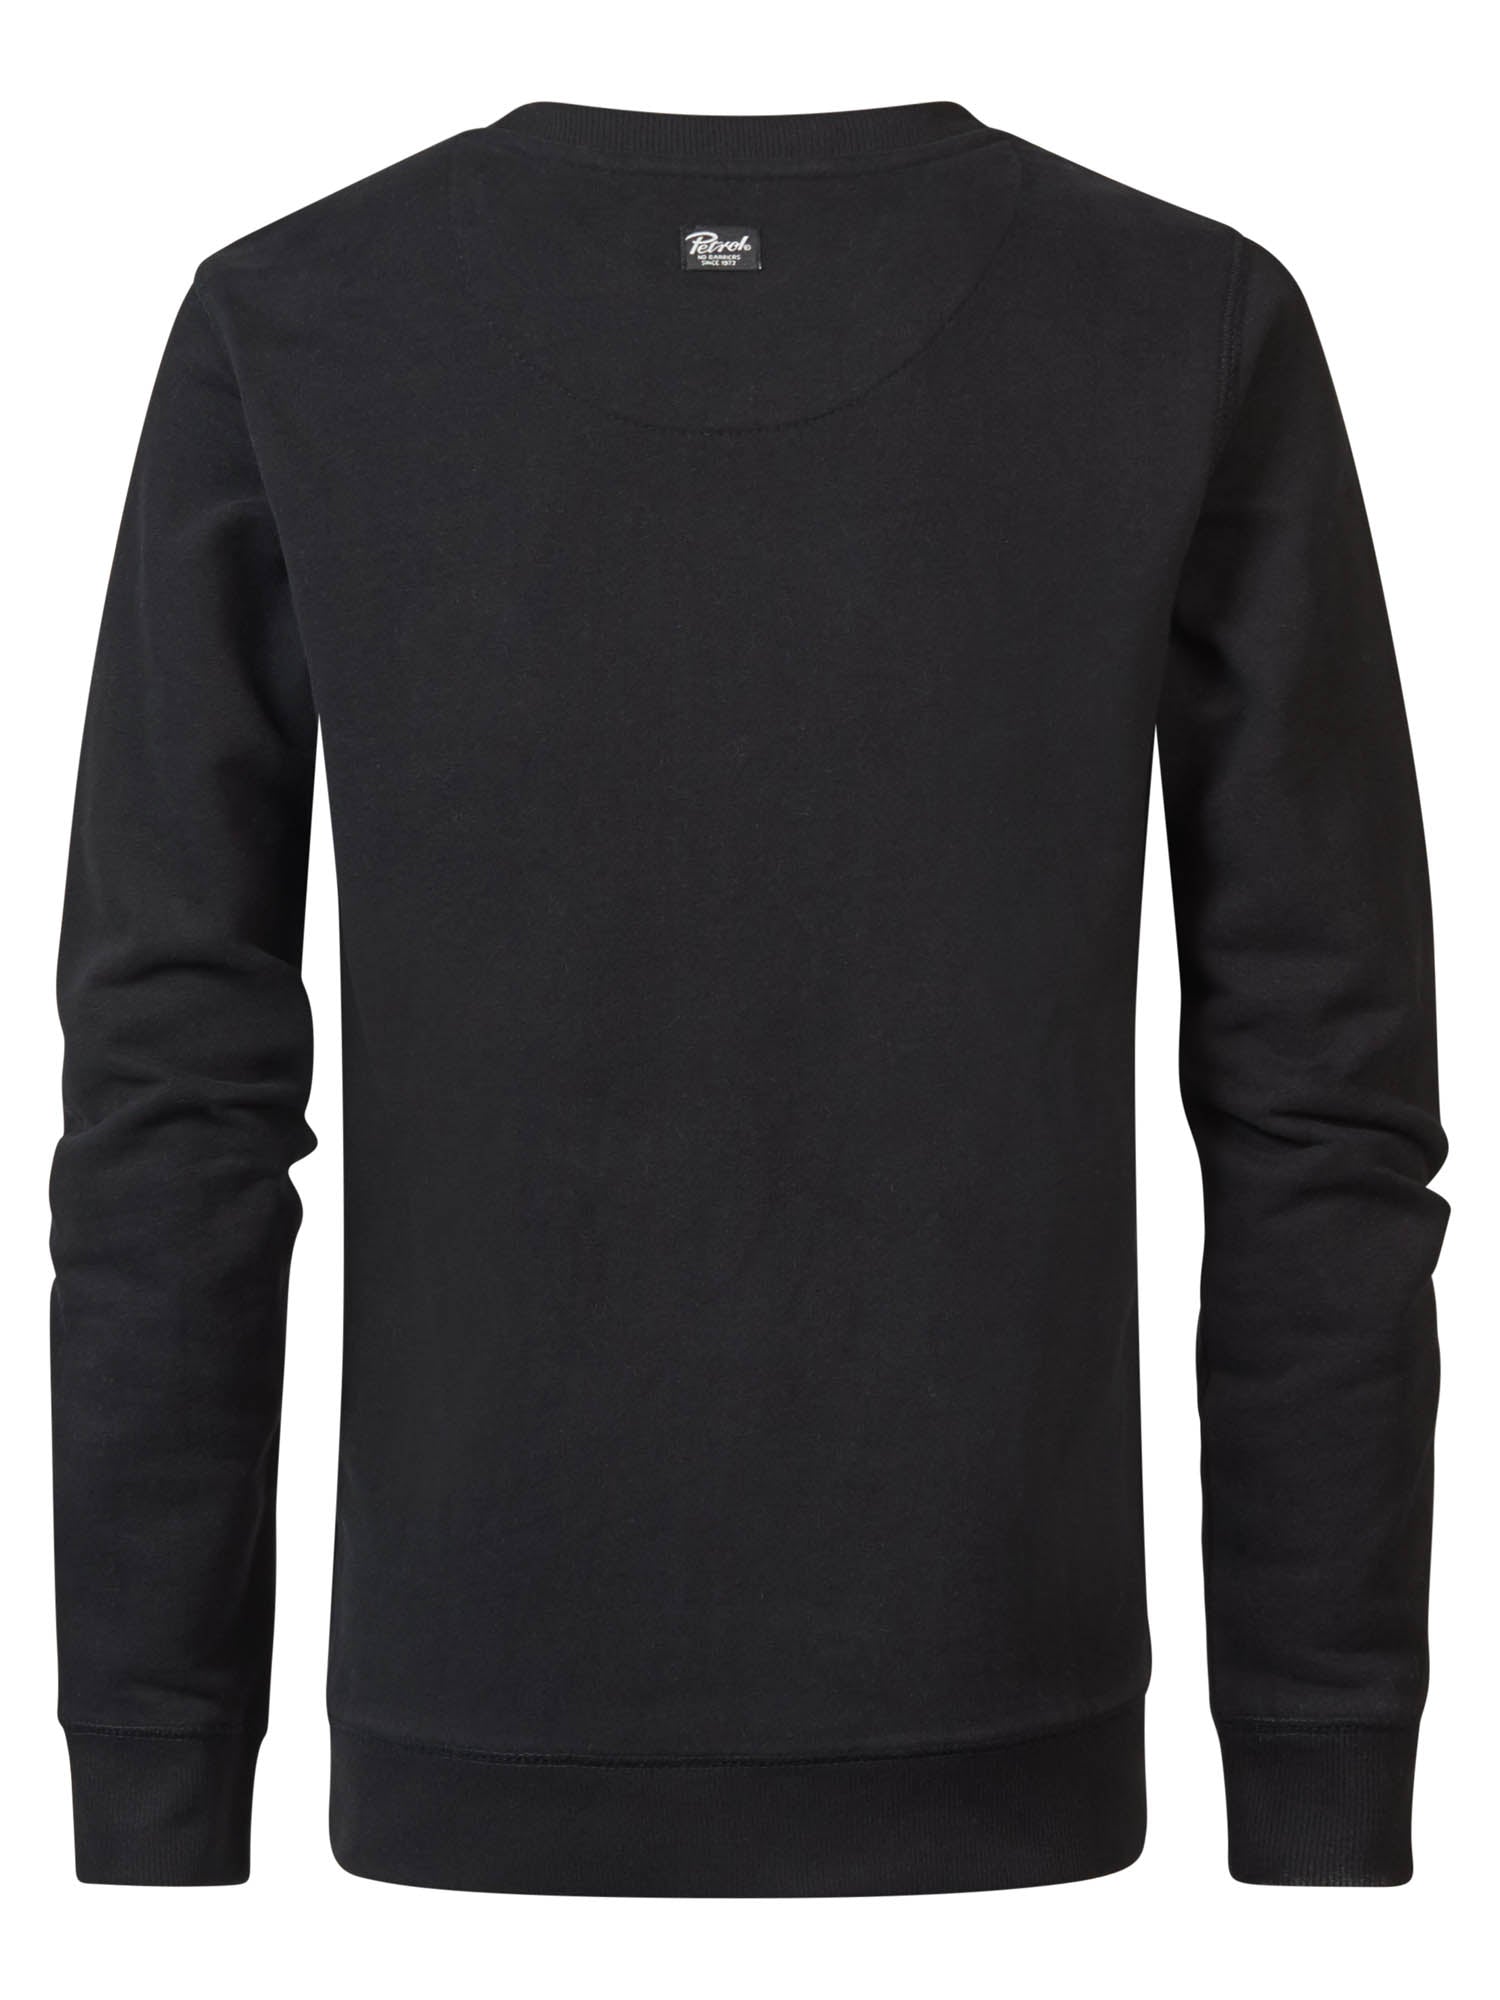 Jongens Sweater Round Neck van Petrol in de kleur Dark Black in maat 164.